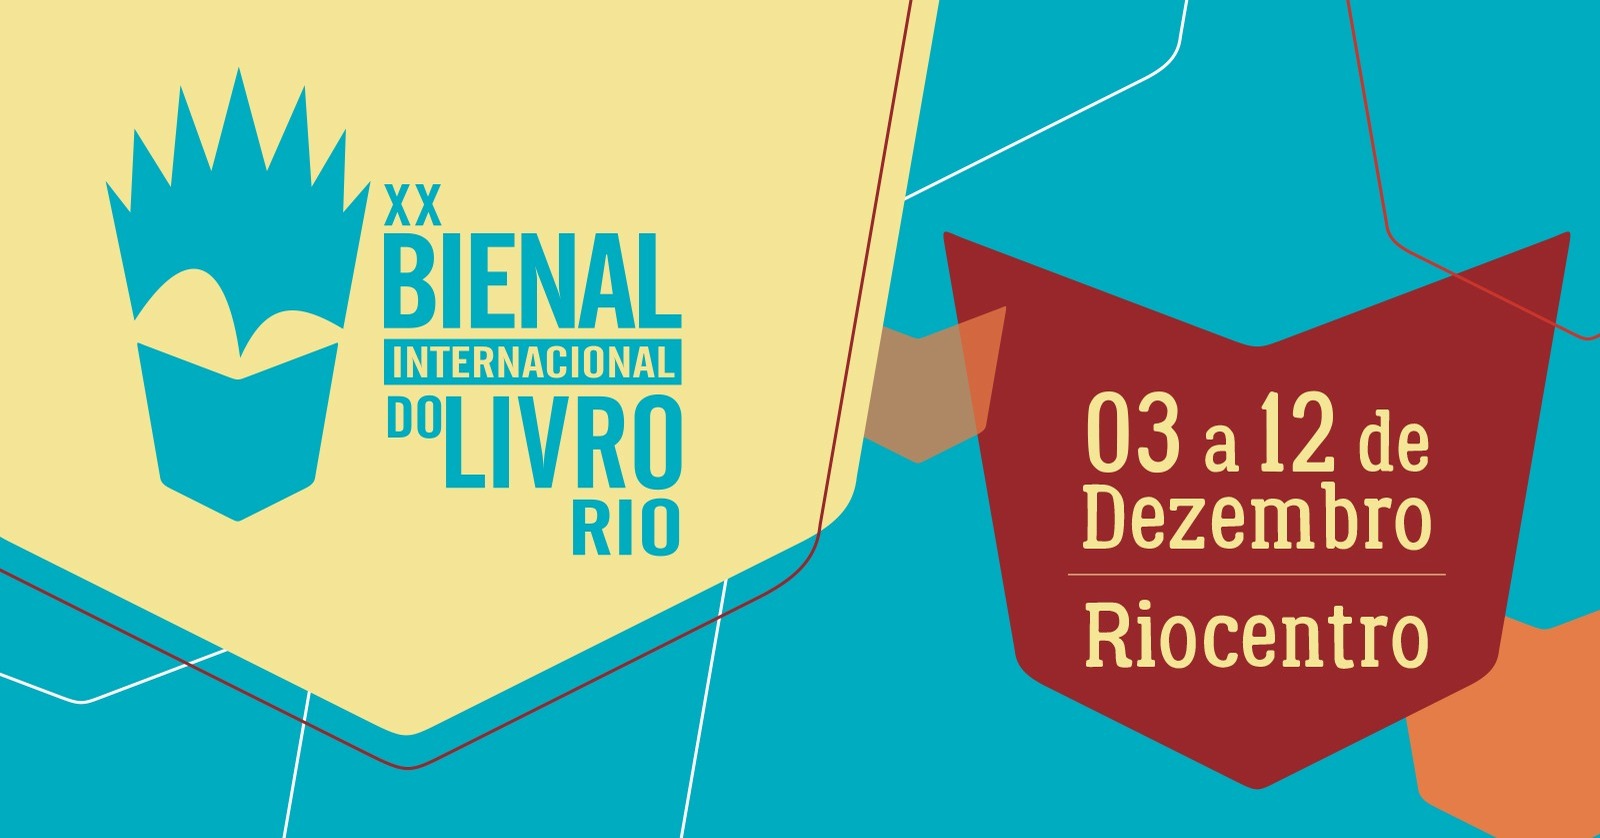 Bienal do Livro Rio: como funciona a compra de ingressos?